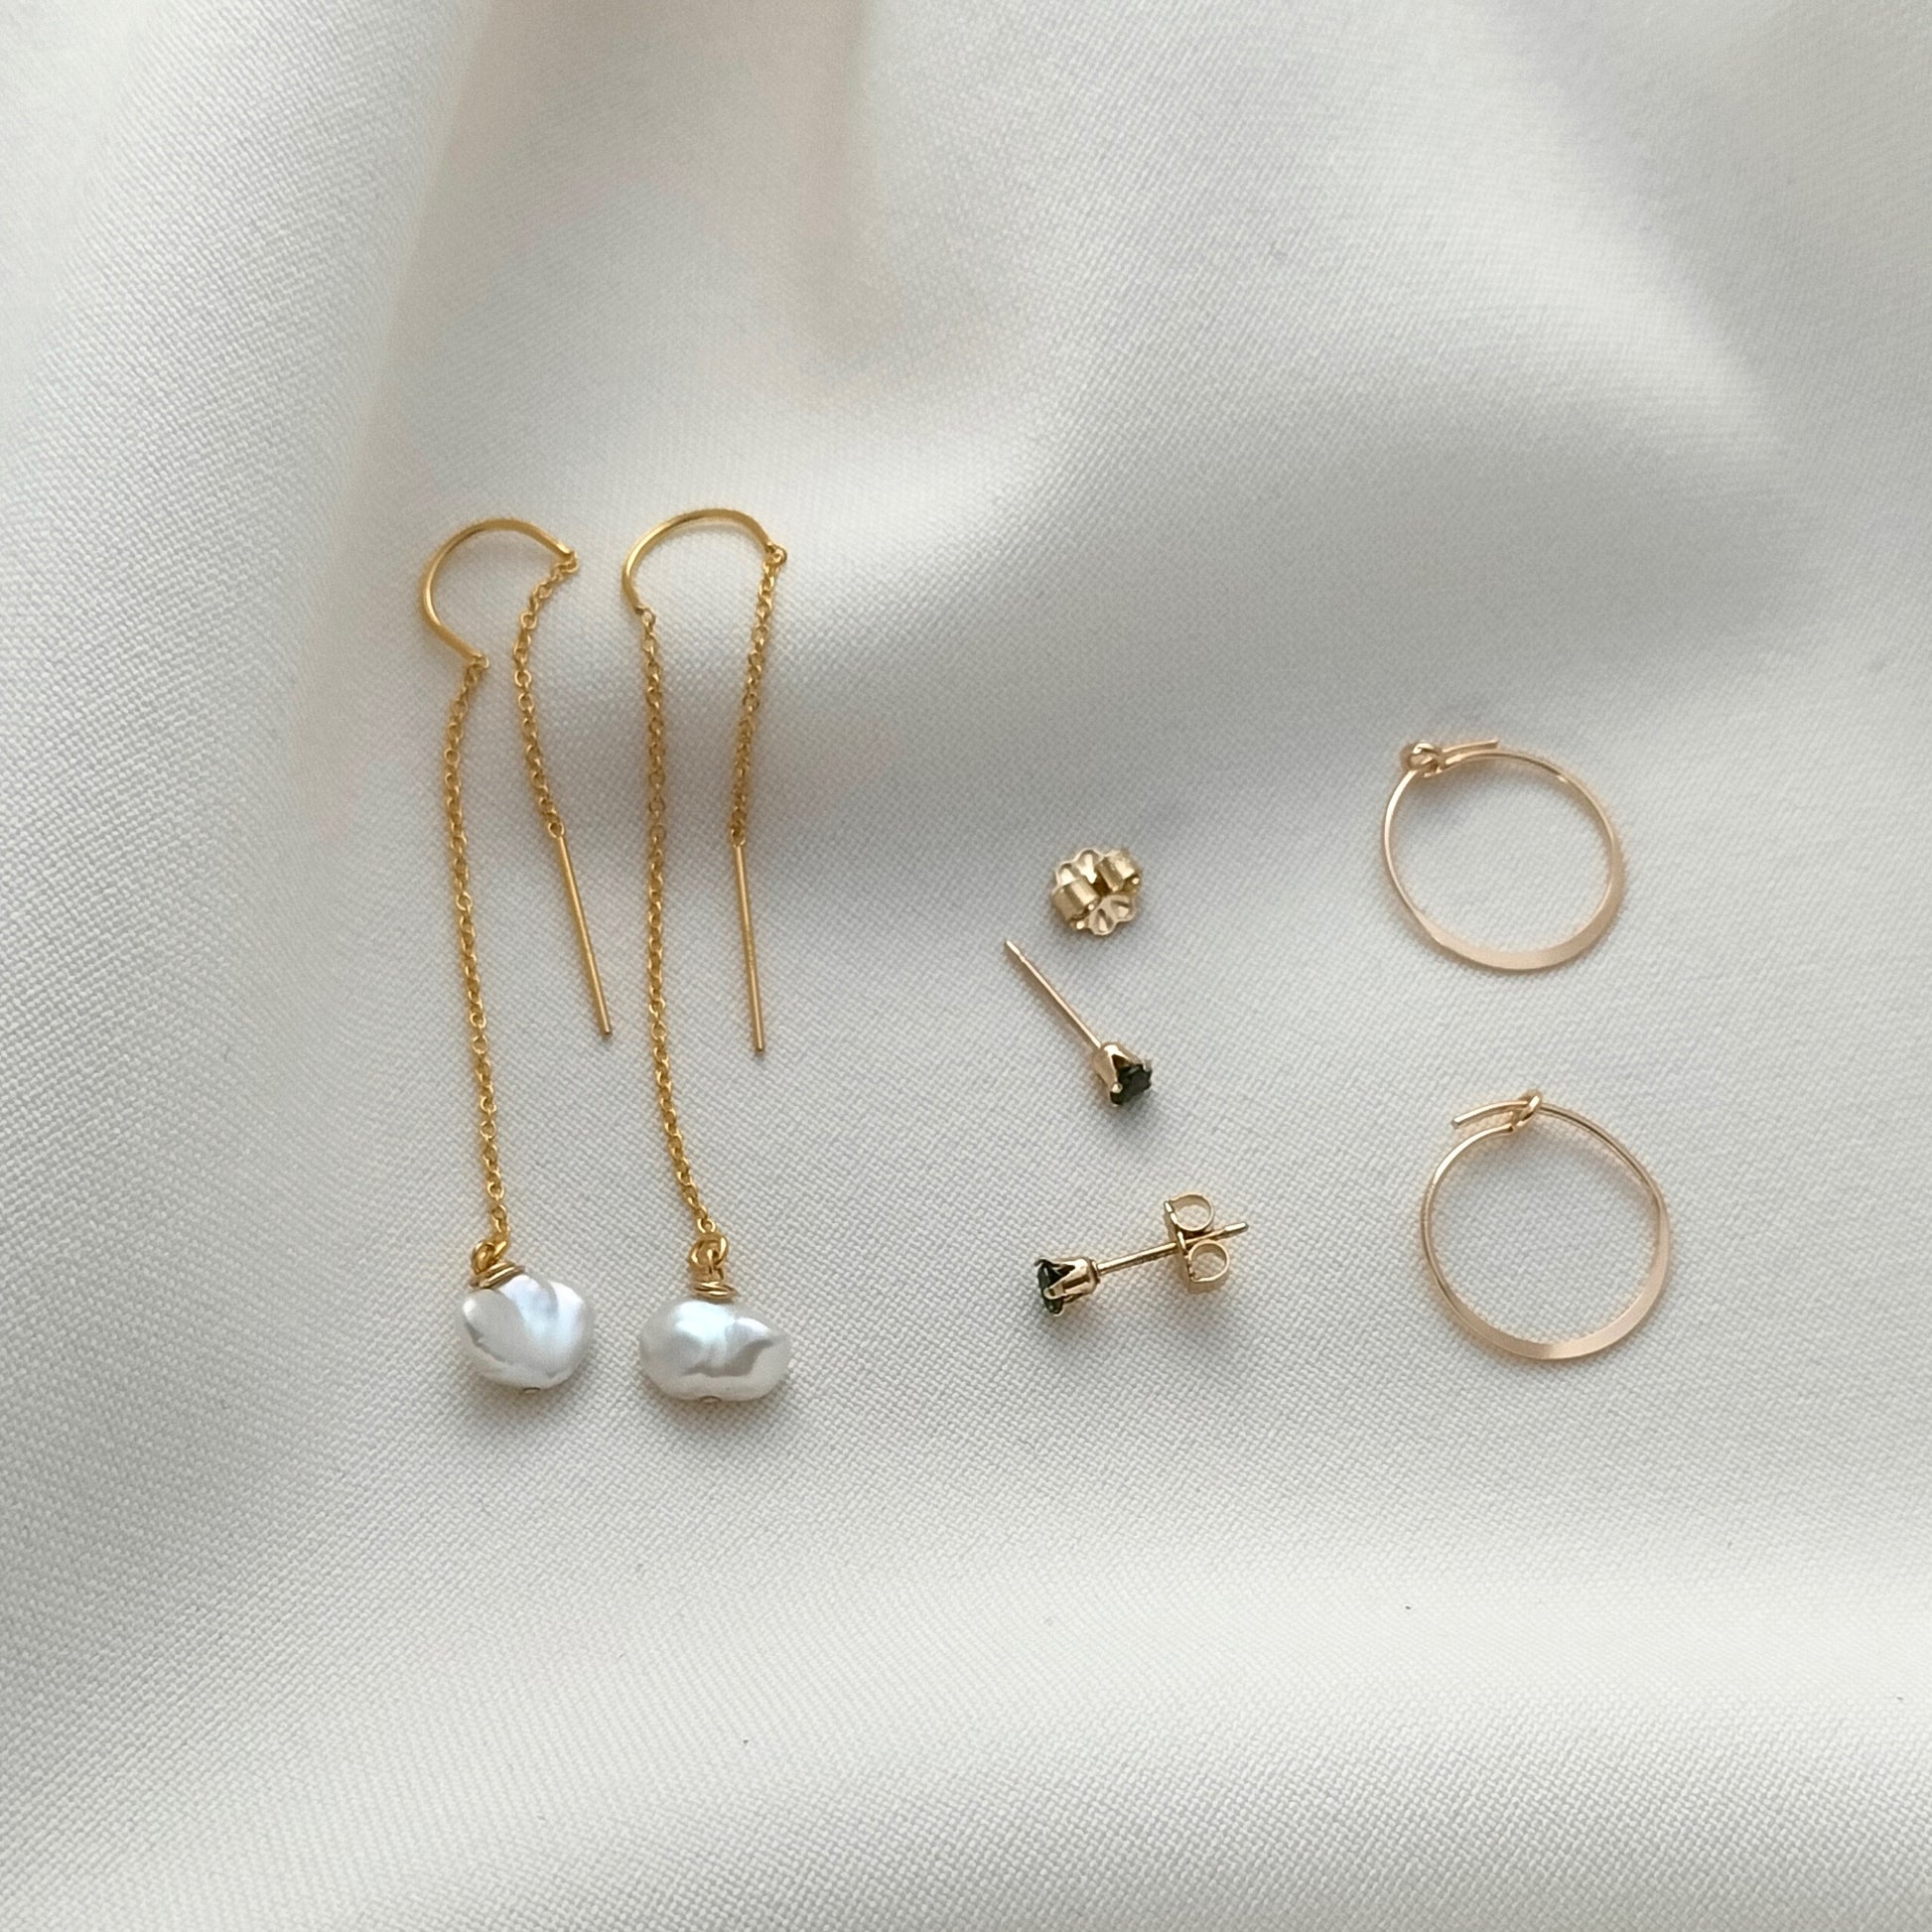 Gold ear threader earring set